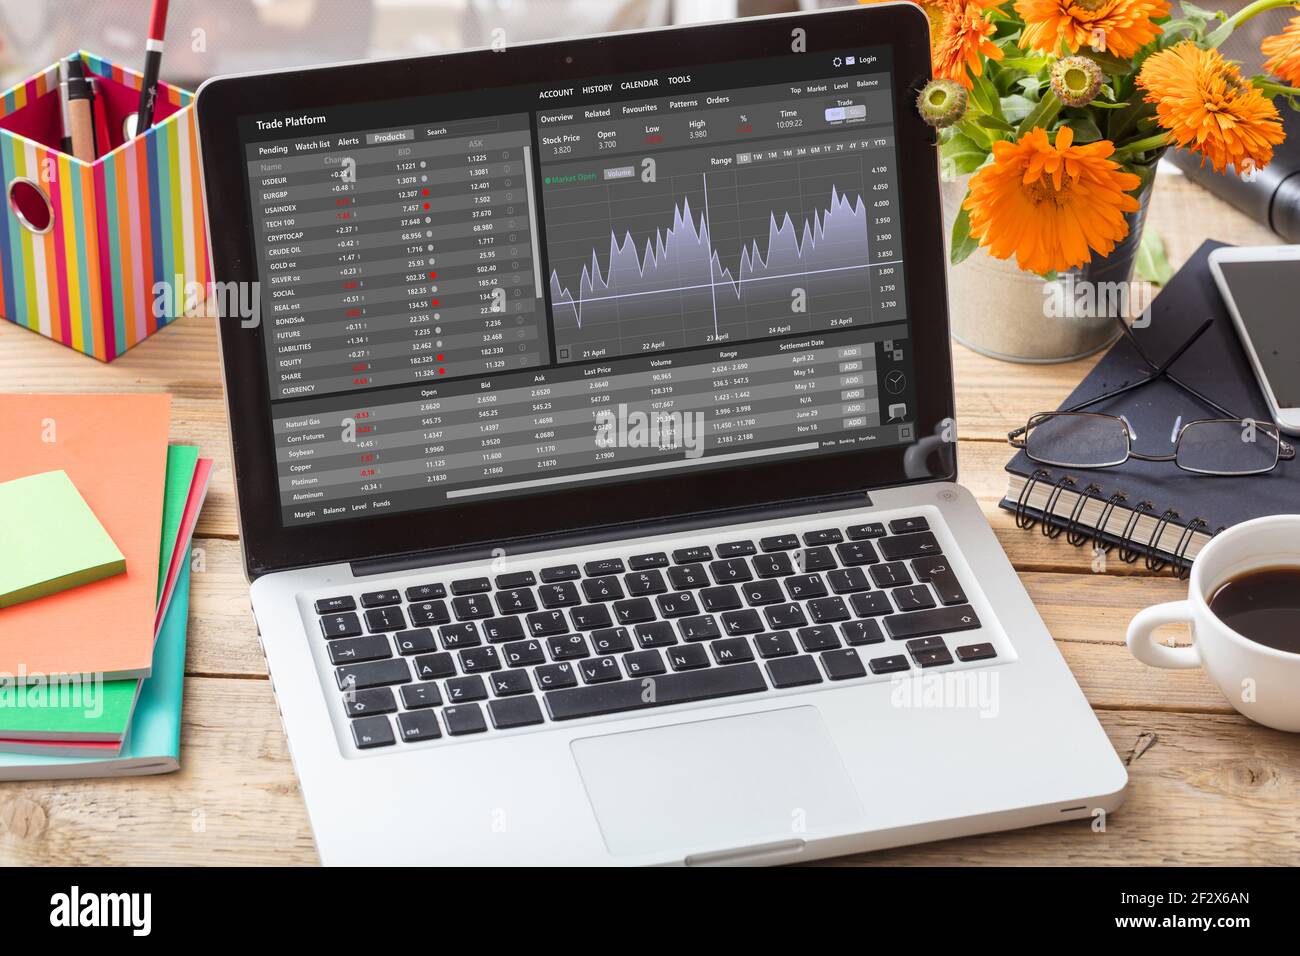 Handelsplattform, Devisenhandel. Börsenmarktanalyse, Monitoring-App auf Laptop-Bildschirm, Büroschreibtisch Hintergrund. Binäre Option, Kerzenständer cha Stockfoto